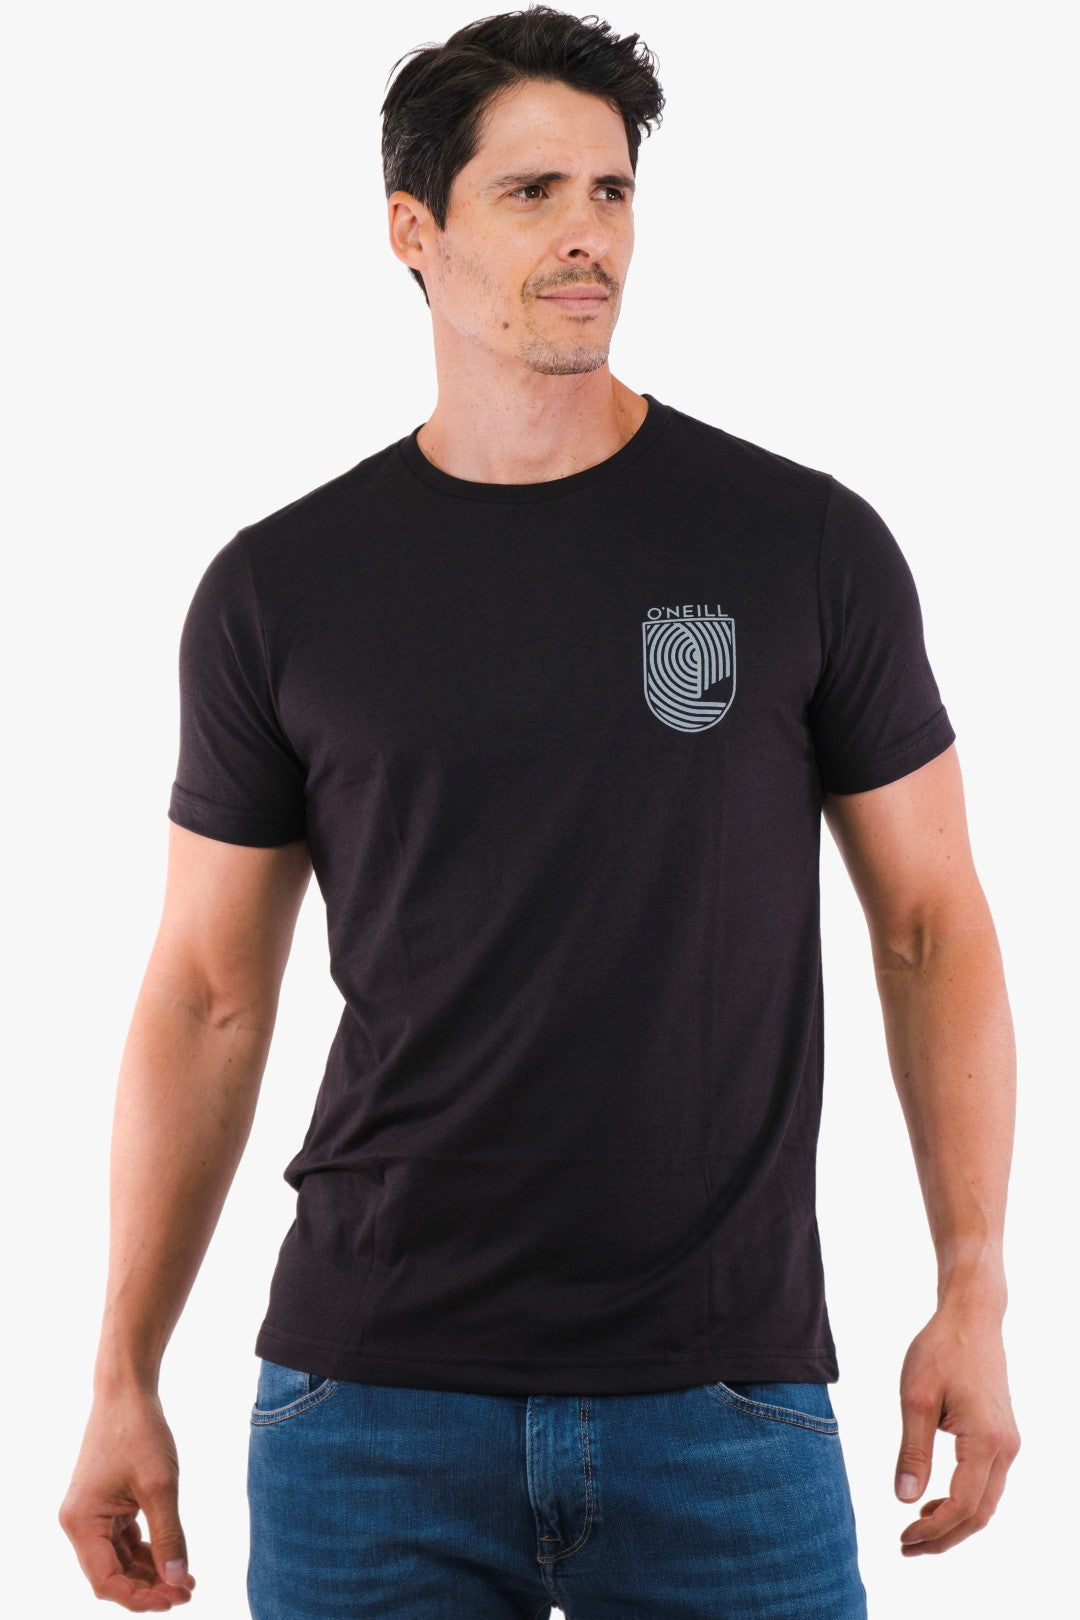 T-Shirt Oneill De Couleur Noir Maillot